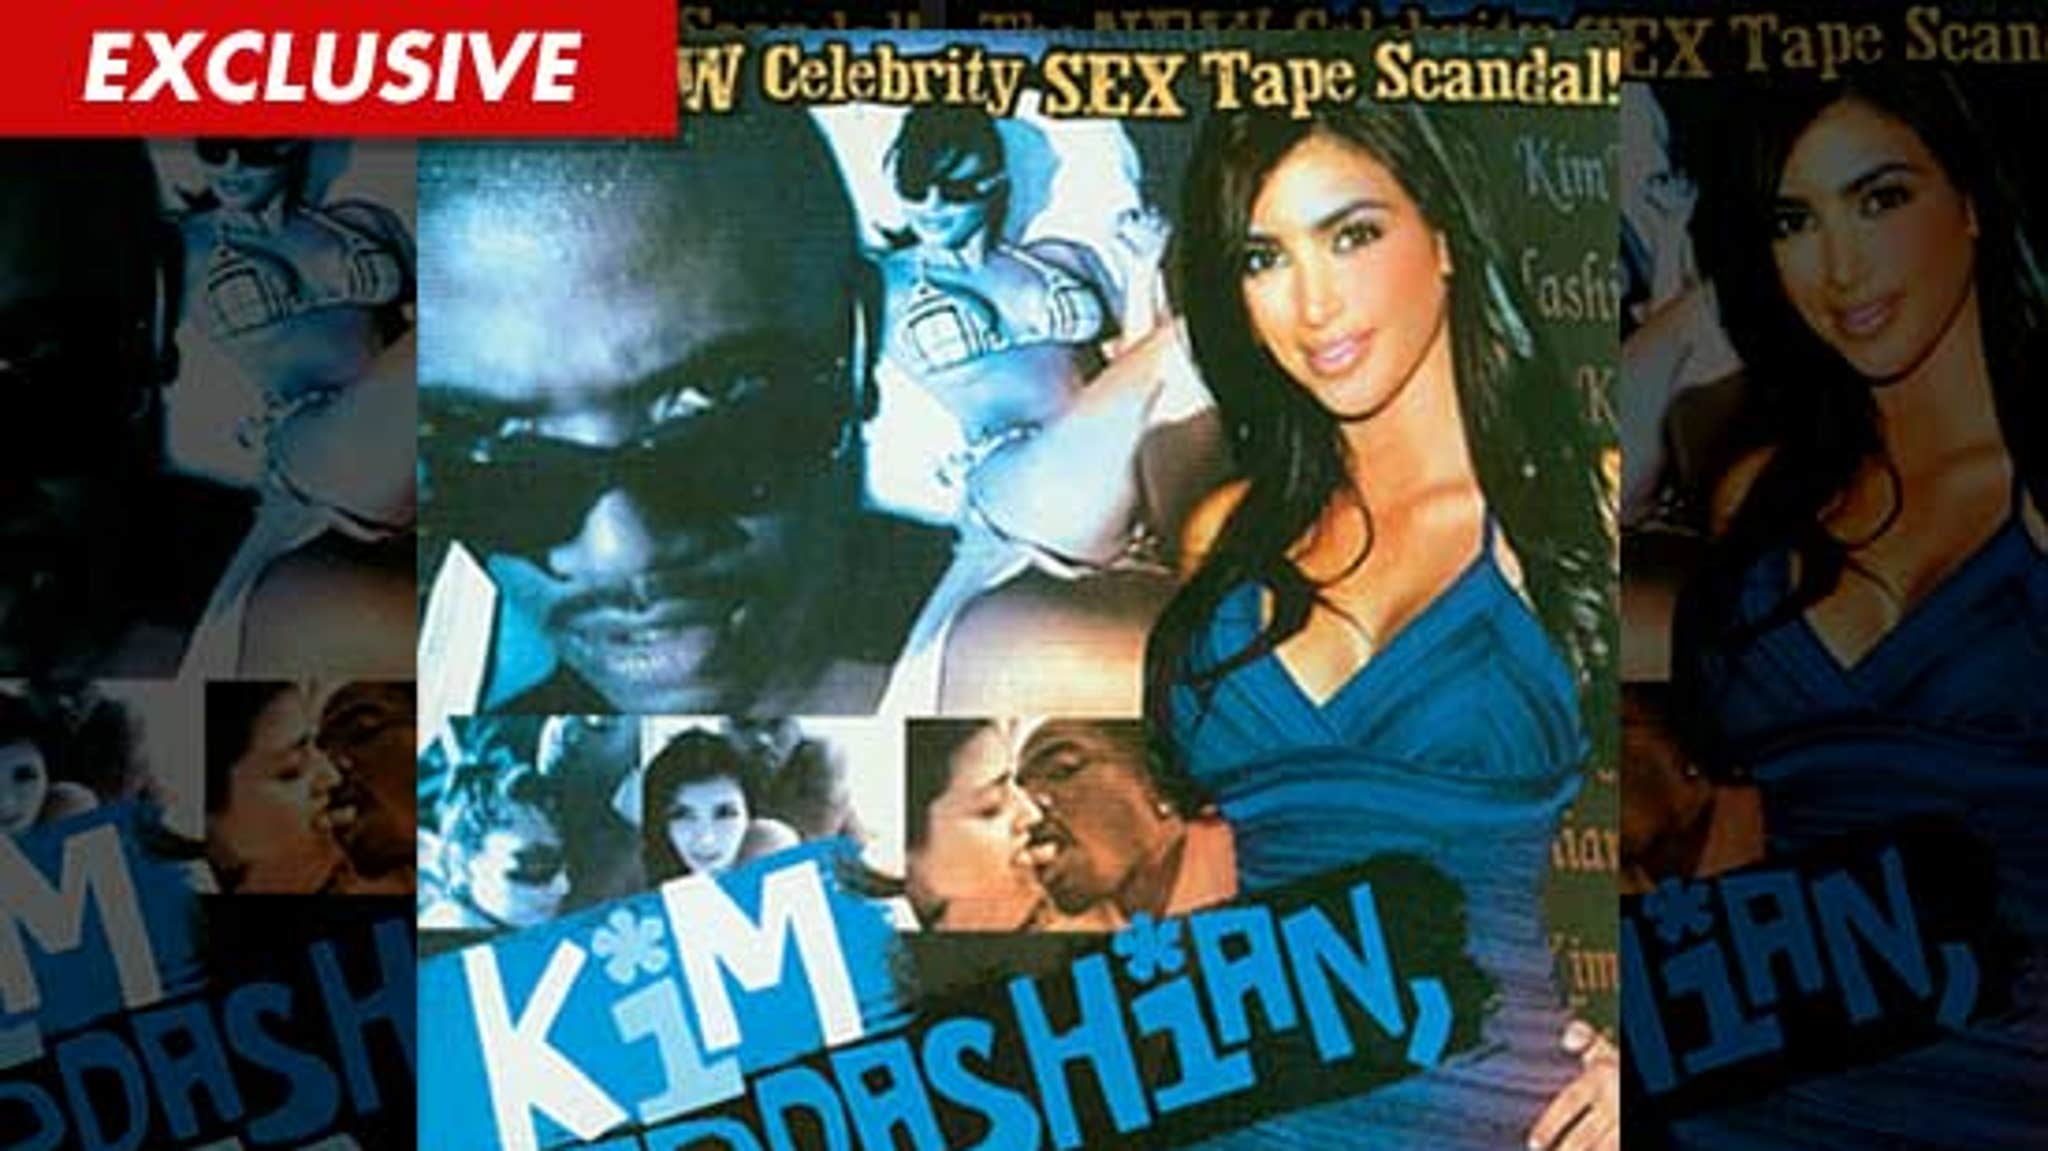 Xxx Kim Kardisan Vidio Hd - Kim Kardashian -- Porn Tape Site ERUPTS During Wedding Weekend